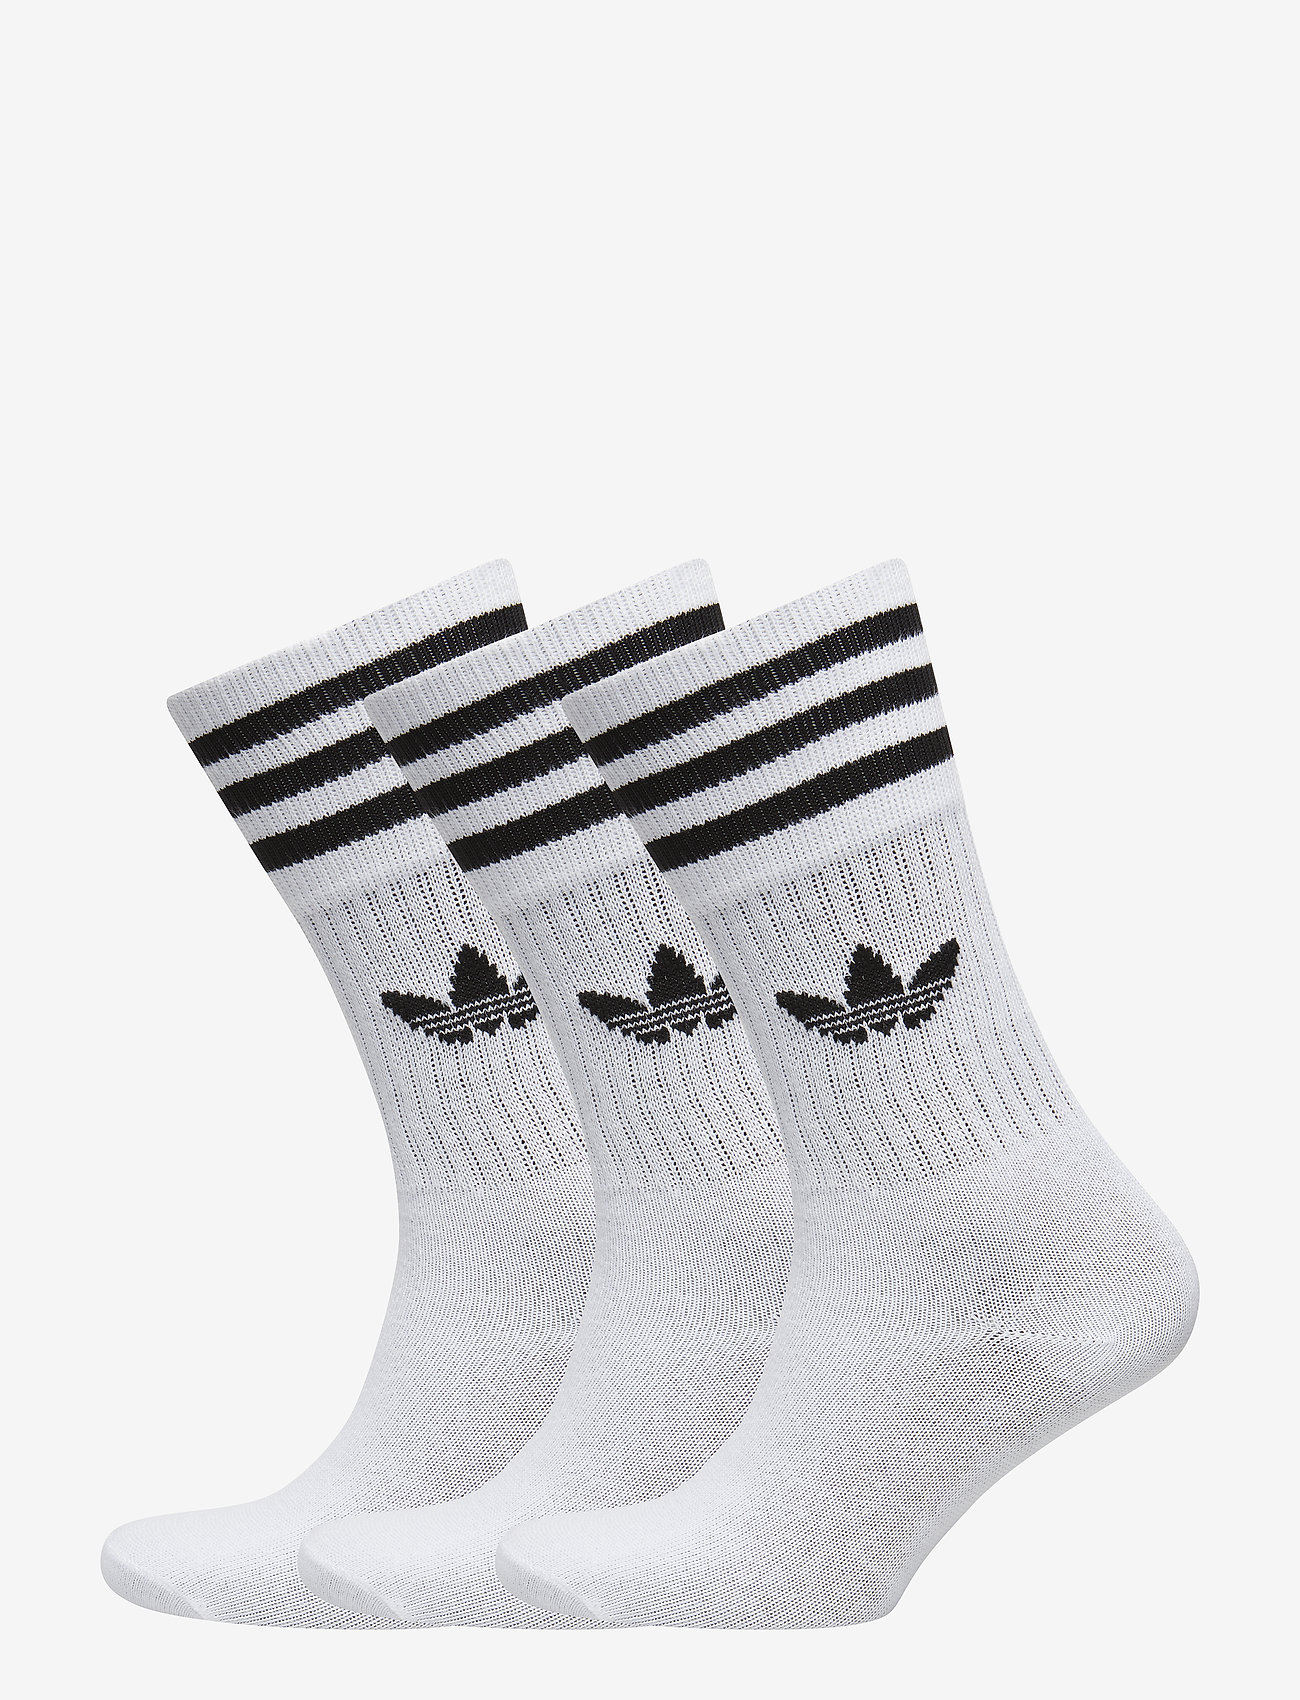 adidas Originals - Crew Socks 3 Pairs - white/black - 0